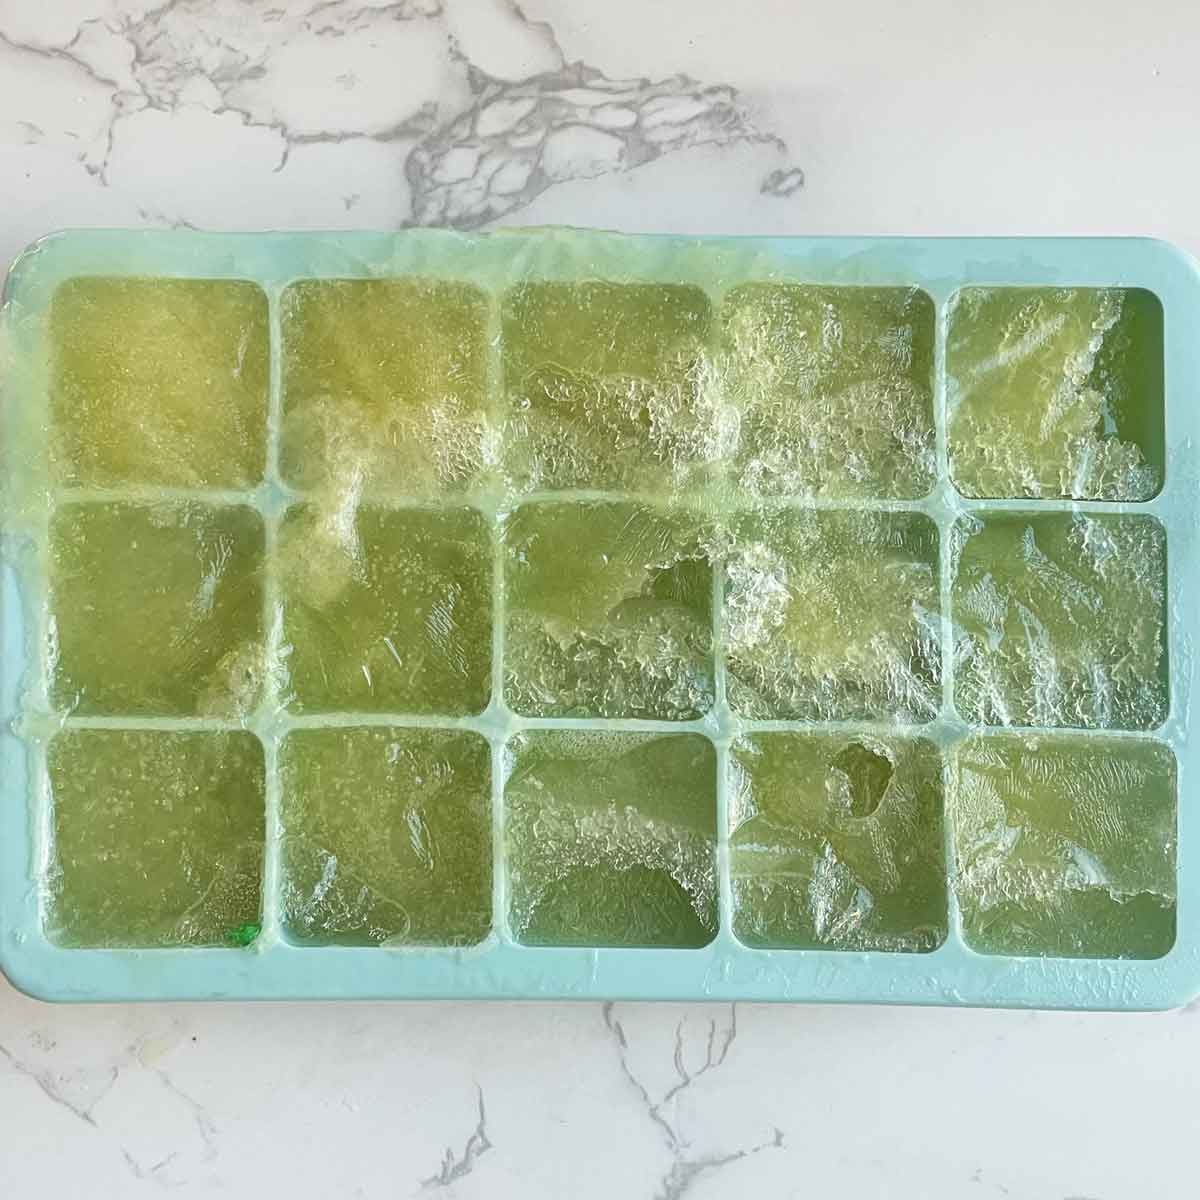 frozen lemon juice cubes in tray.